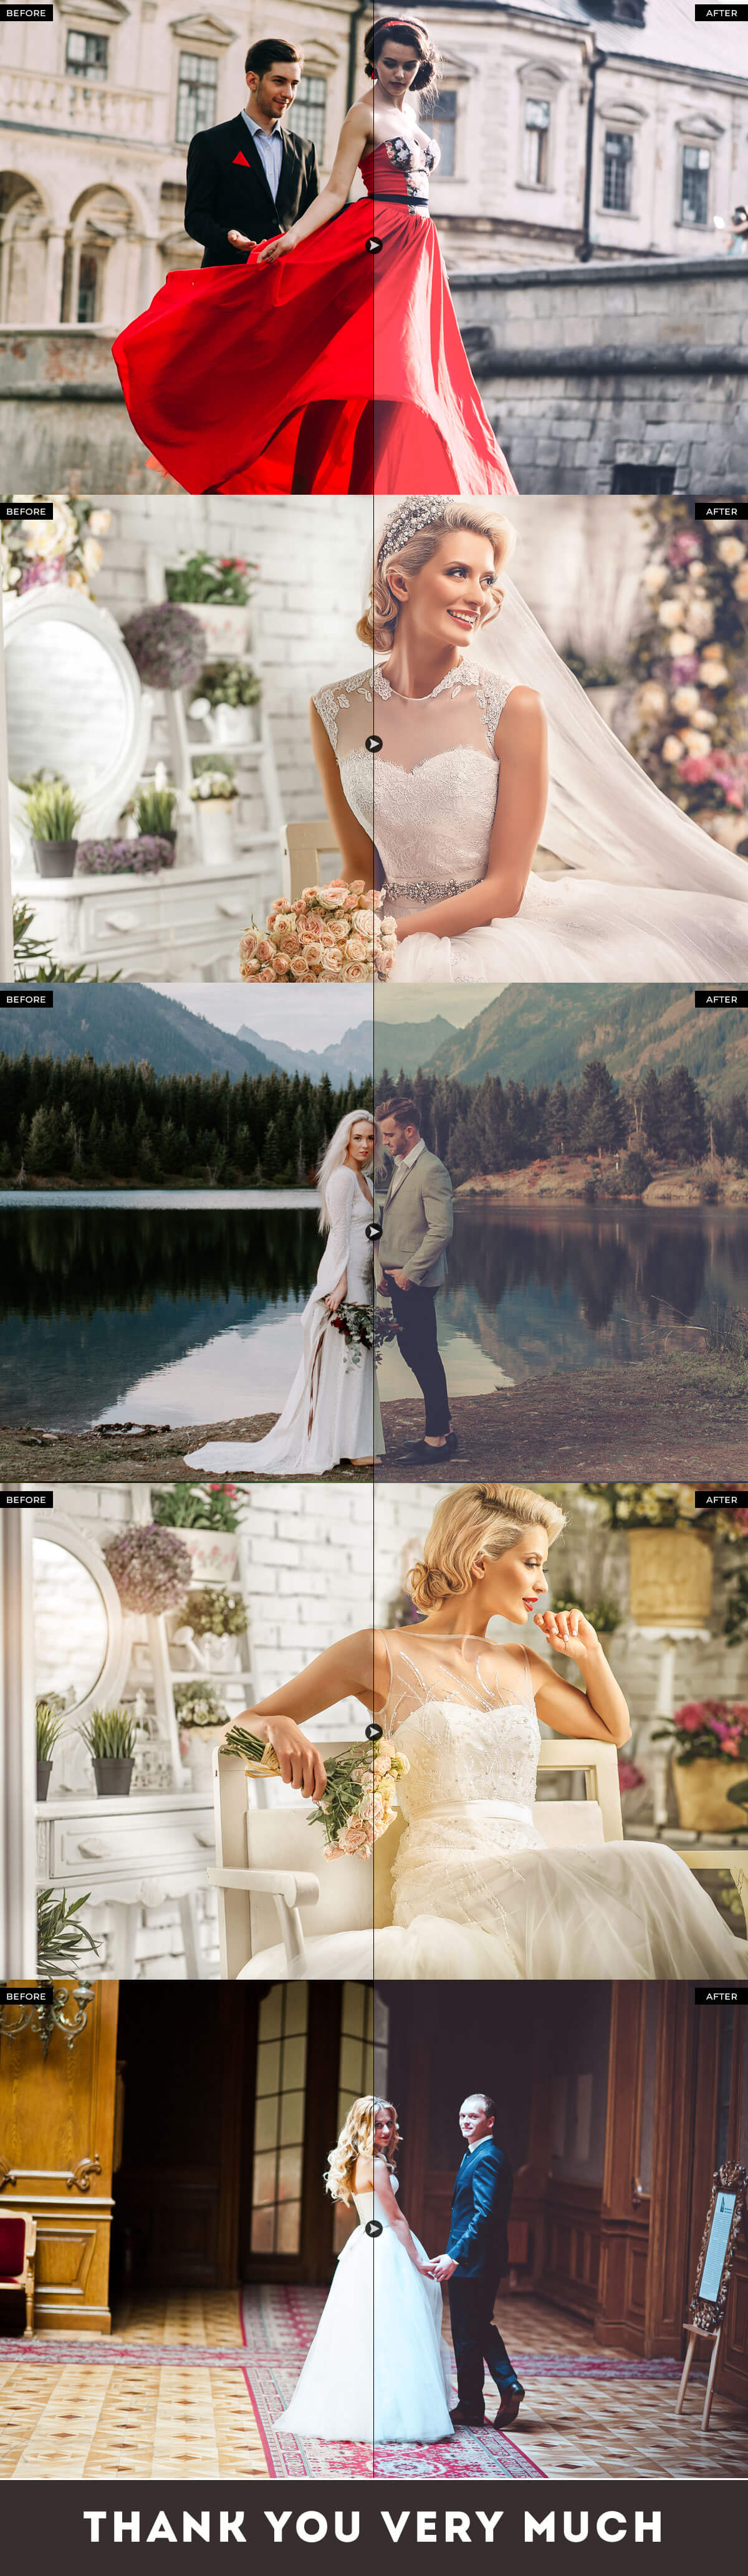 旅行婚纱摄影后期图片PS动作 Royal Wedding Pro Photoshop Actions插图